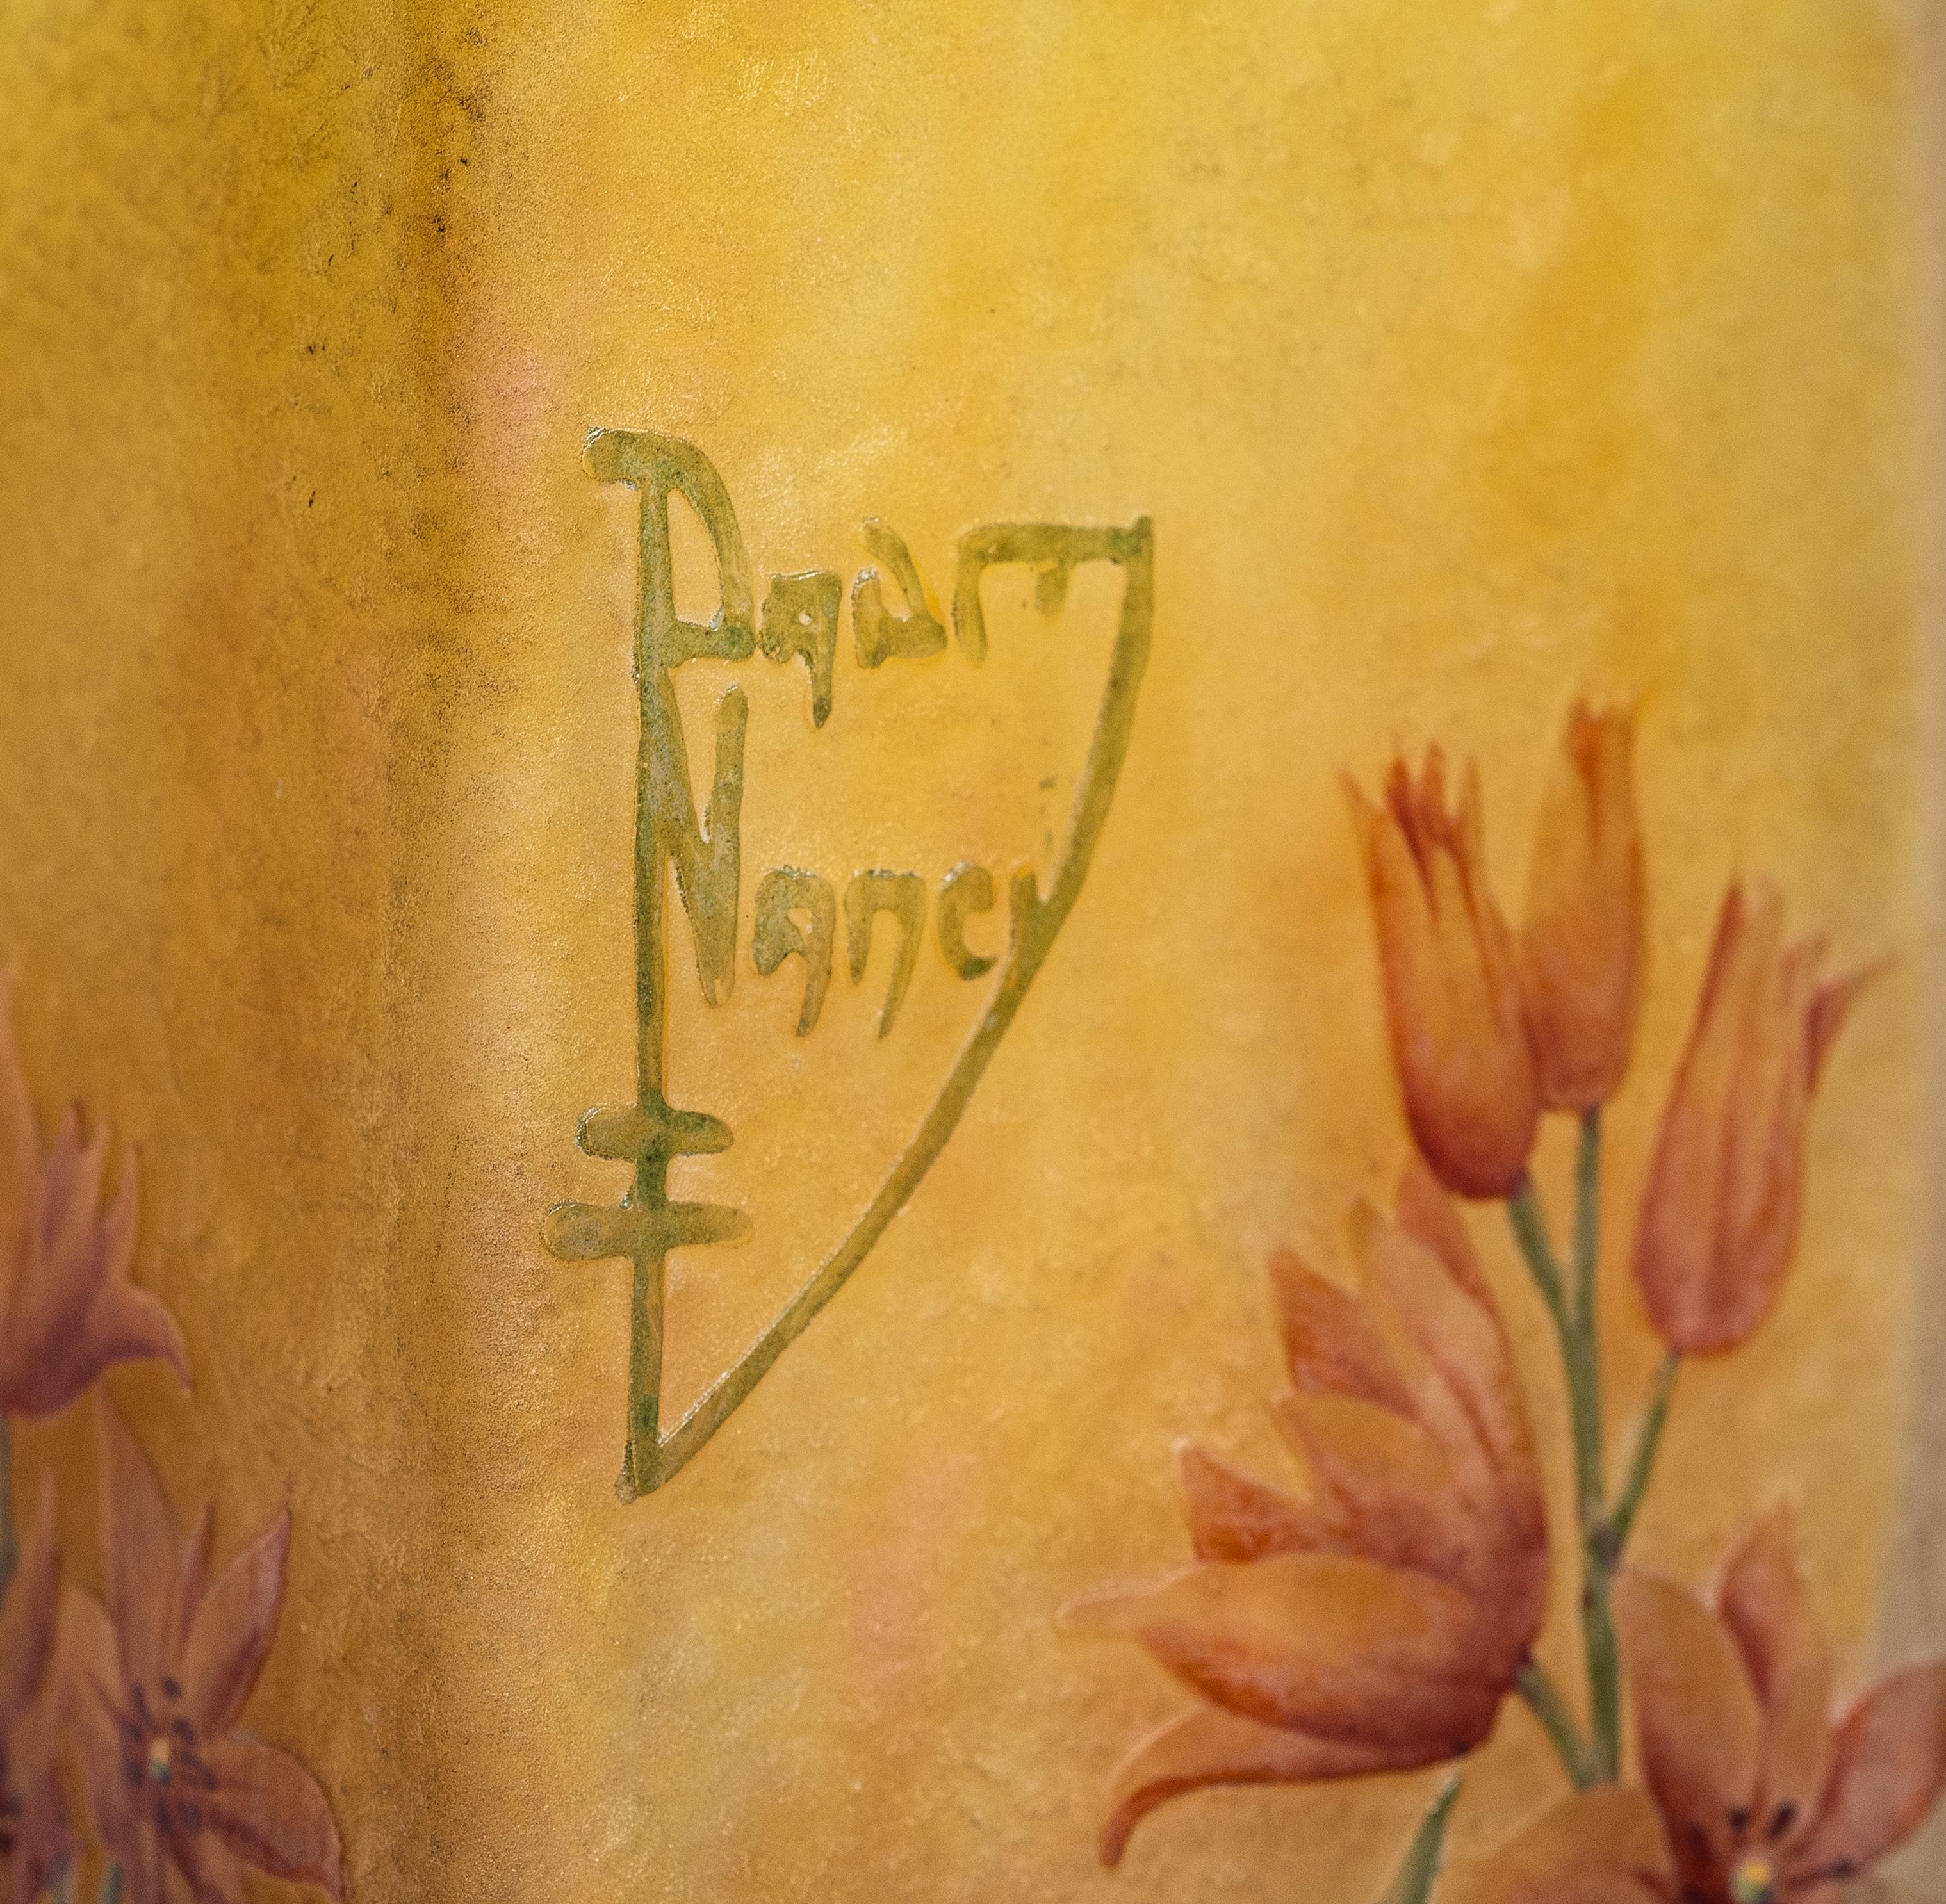 Vase Daum Nancy en verre camée et émaillé,
France, vers 1910
Décoré de fleurs sauvages roses sur un fond jaune opalescent
Cameo marque Daum Nancy avec croix de Lorraine
Dimensions :
Largeur 2 in. (5,2 cm.)
Hauteur 4,6 in. (11,8 cm).